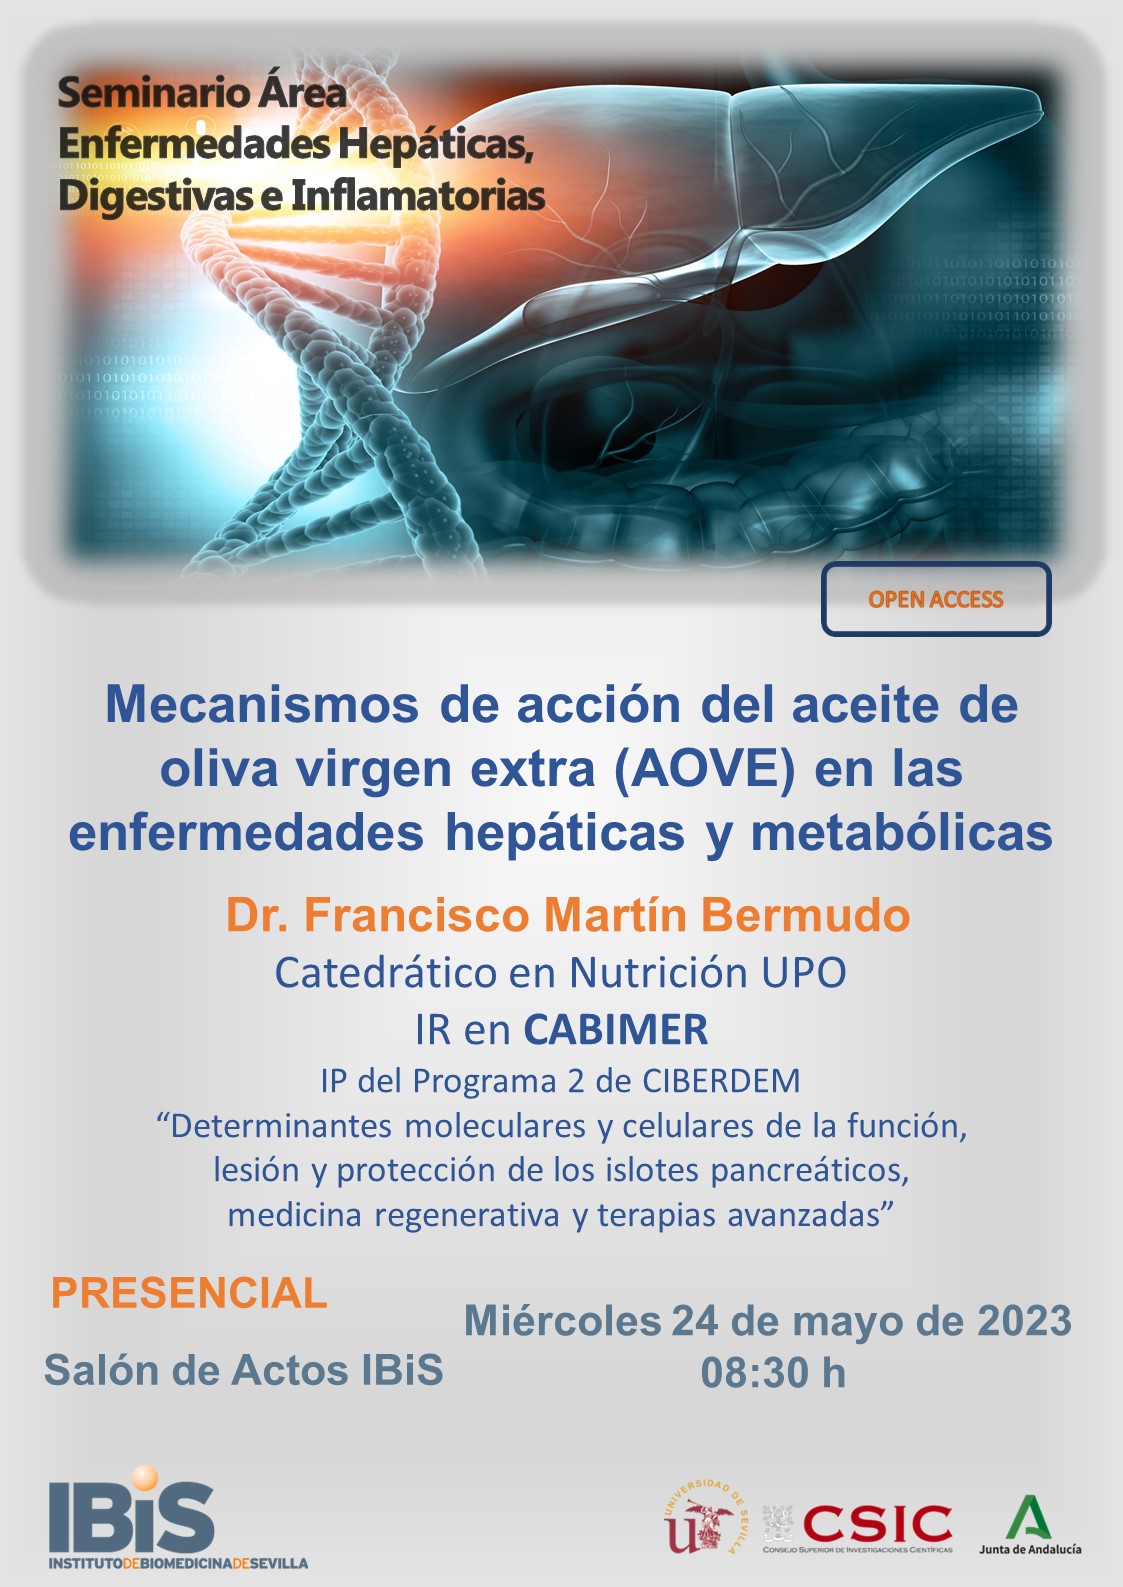 Poster: Mecanismos de acción del aceite de oliva virgen extra (AOVE) en las enfermedades hepáticas y metabólicas